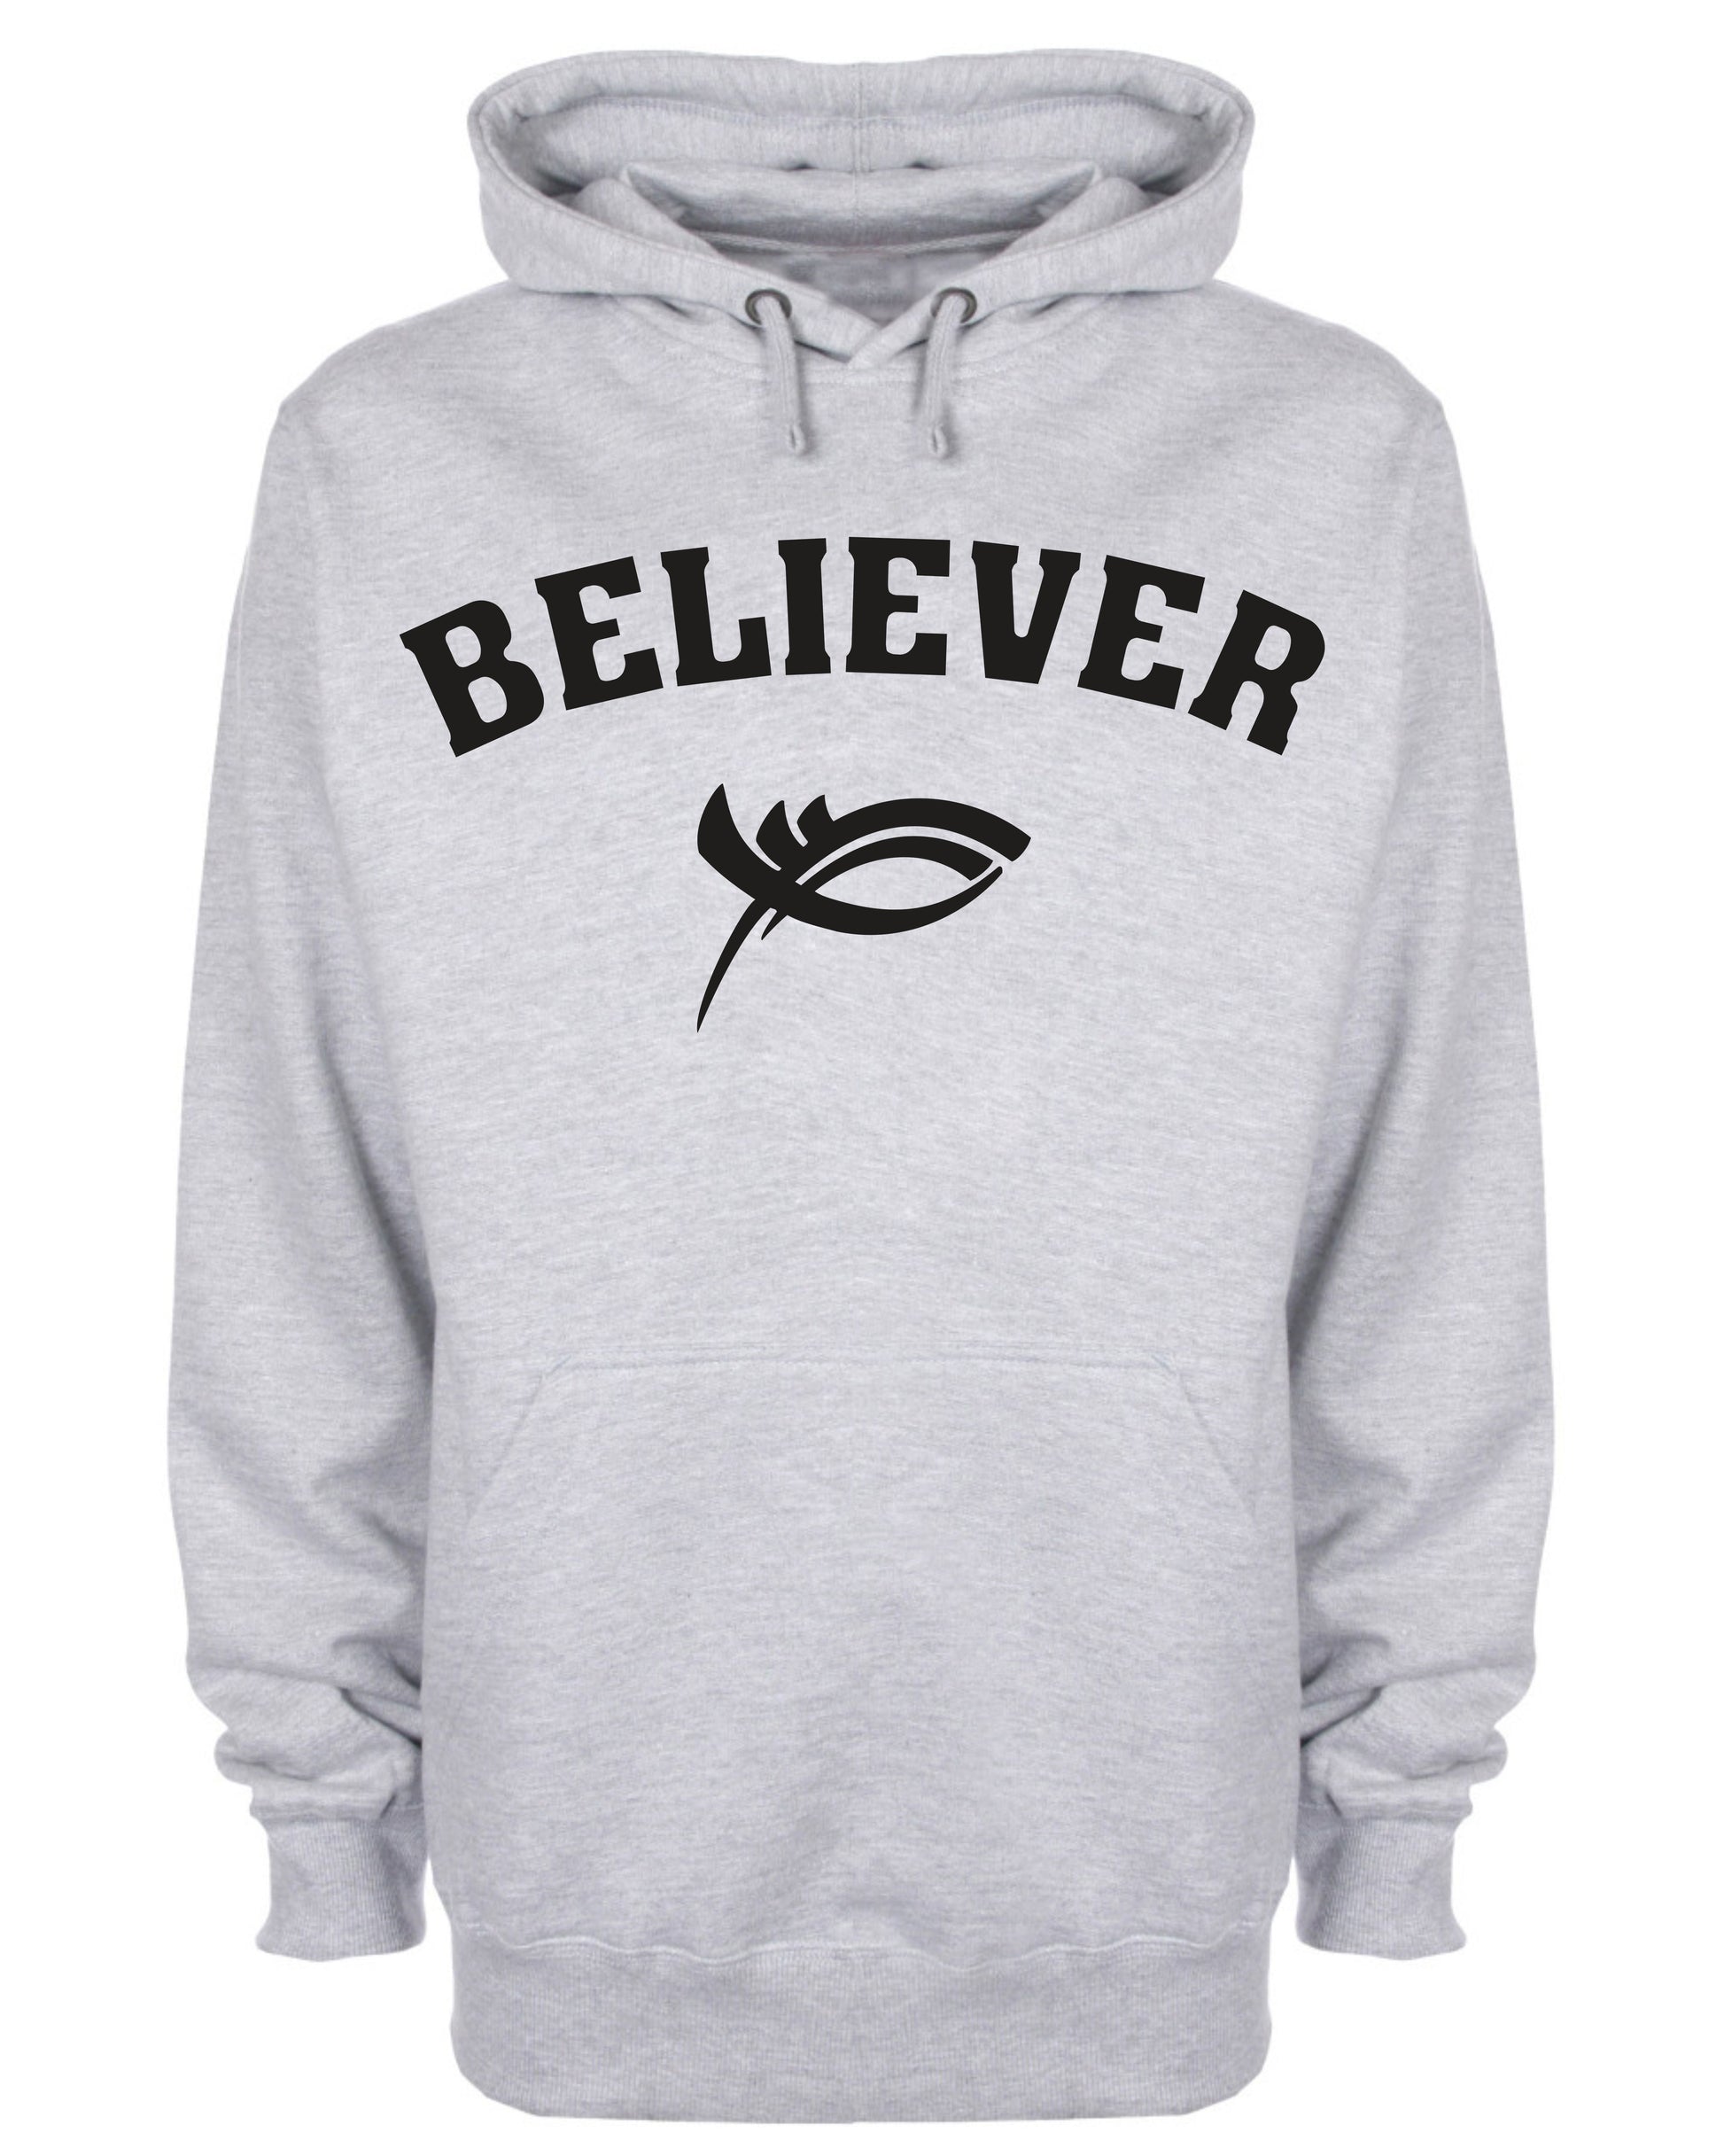 Believer Hoodie Christian Sweatshirt